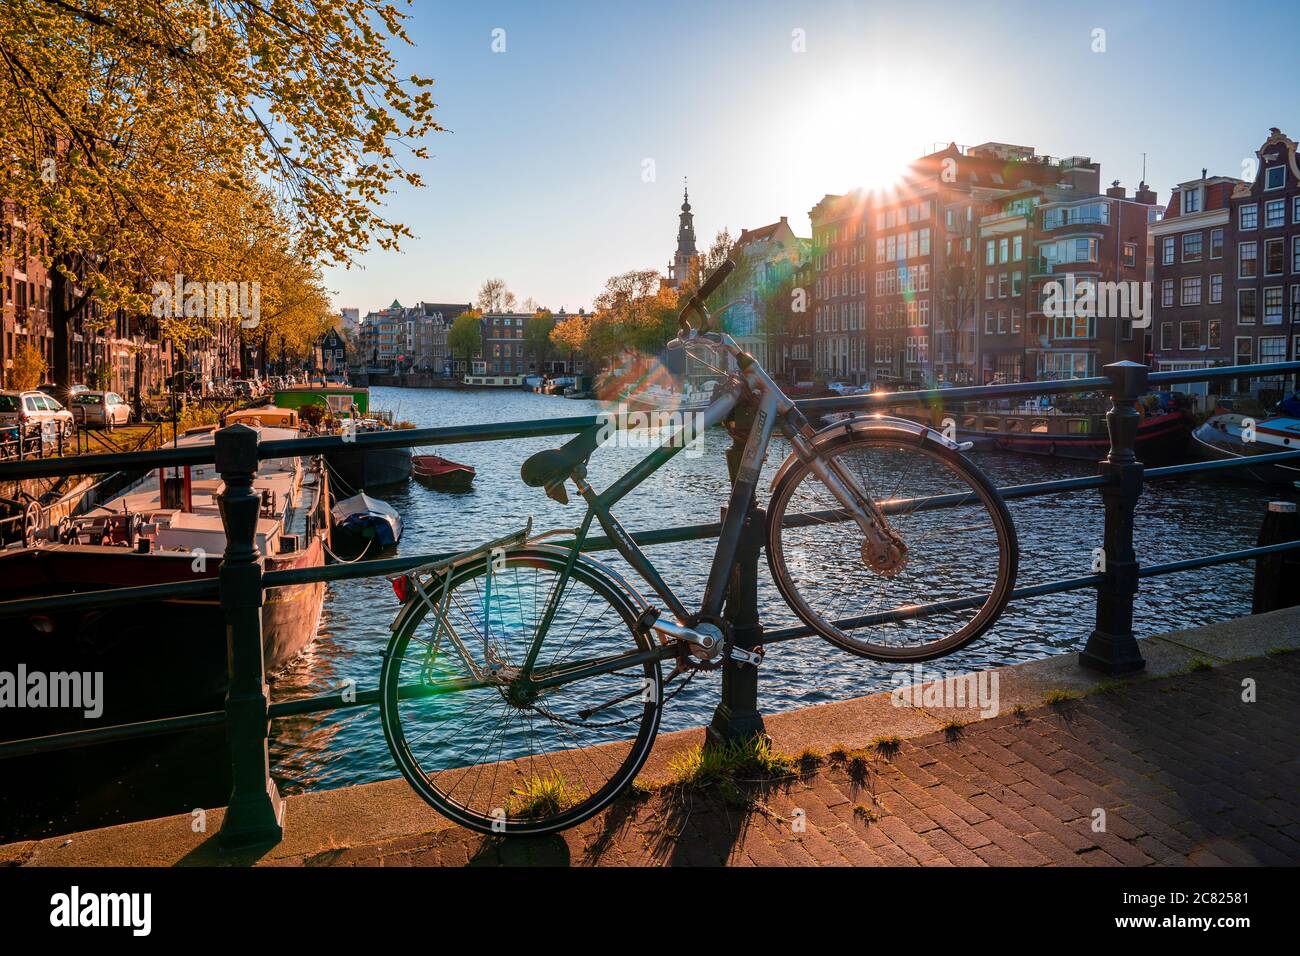 Immagine di una città con un canale e un bicicletta sul ponte - perfetto per lo sfondo Foto Stock